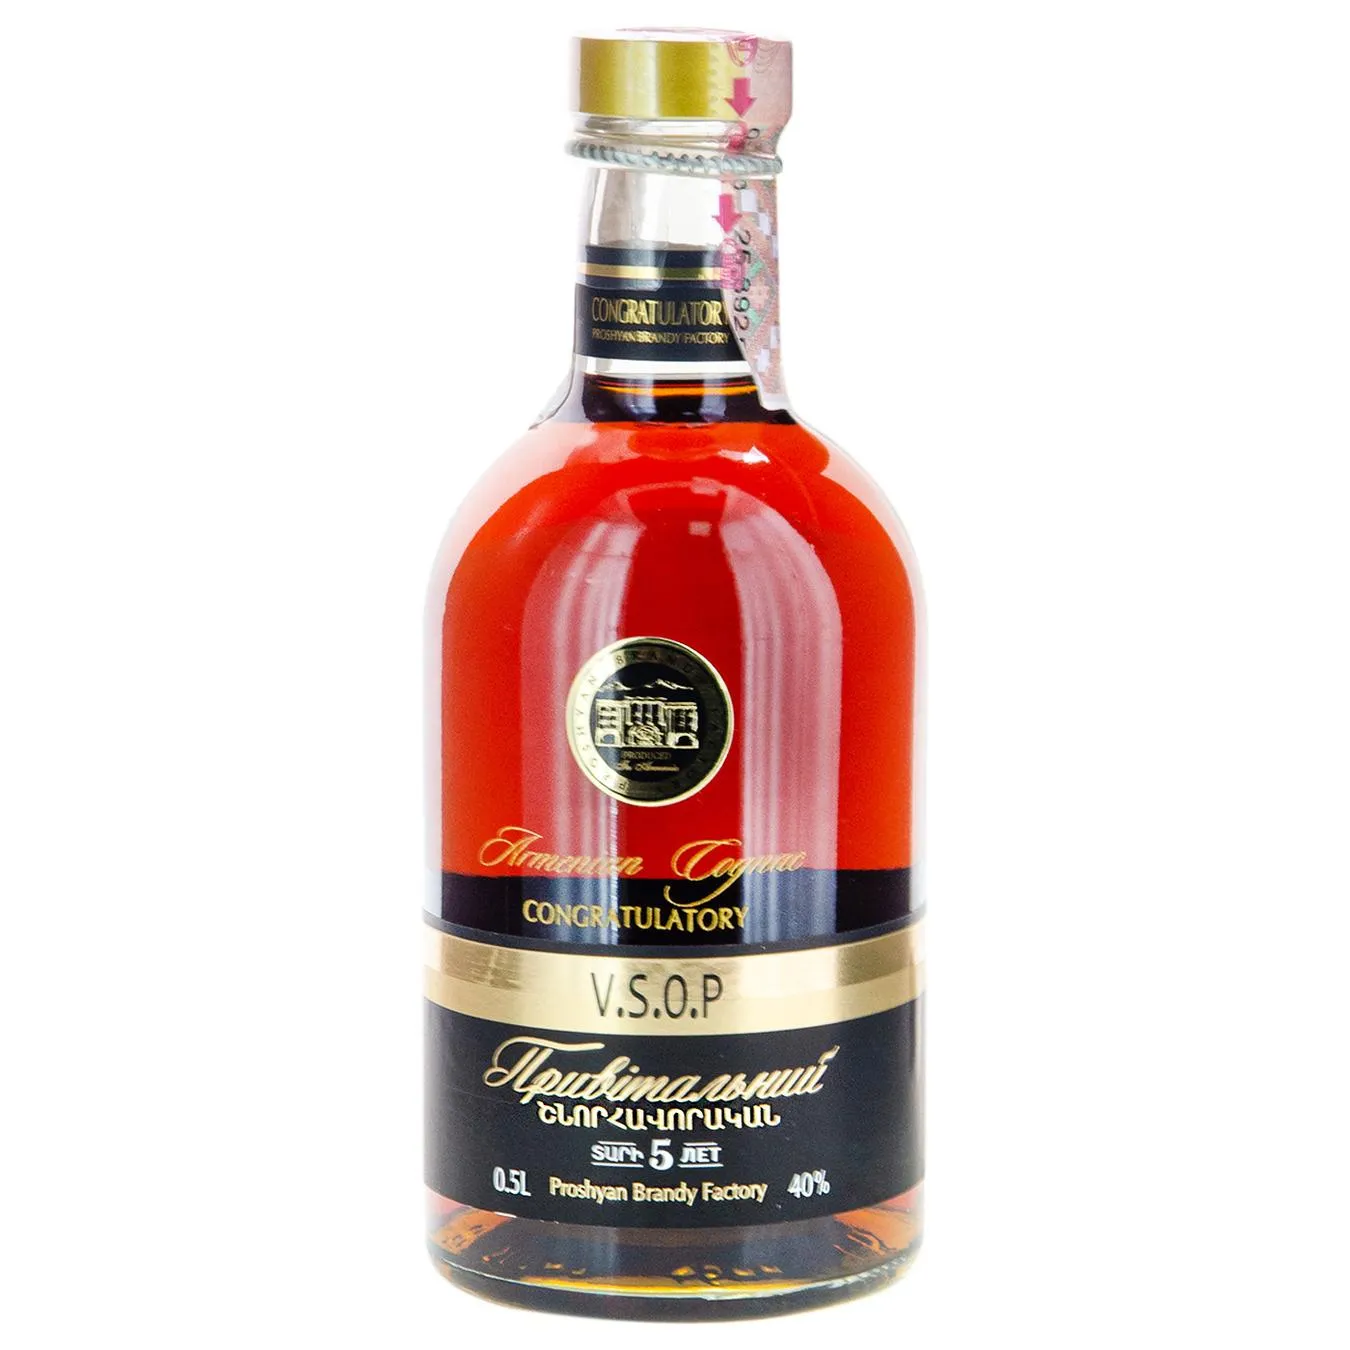 Cognac Armenian Congratulatory 5 years 40% 0,5l